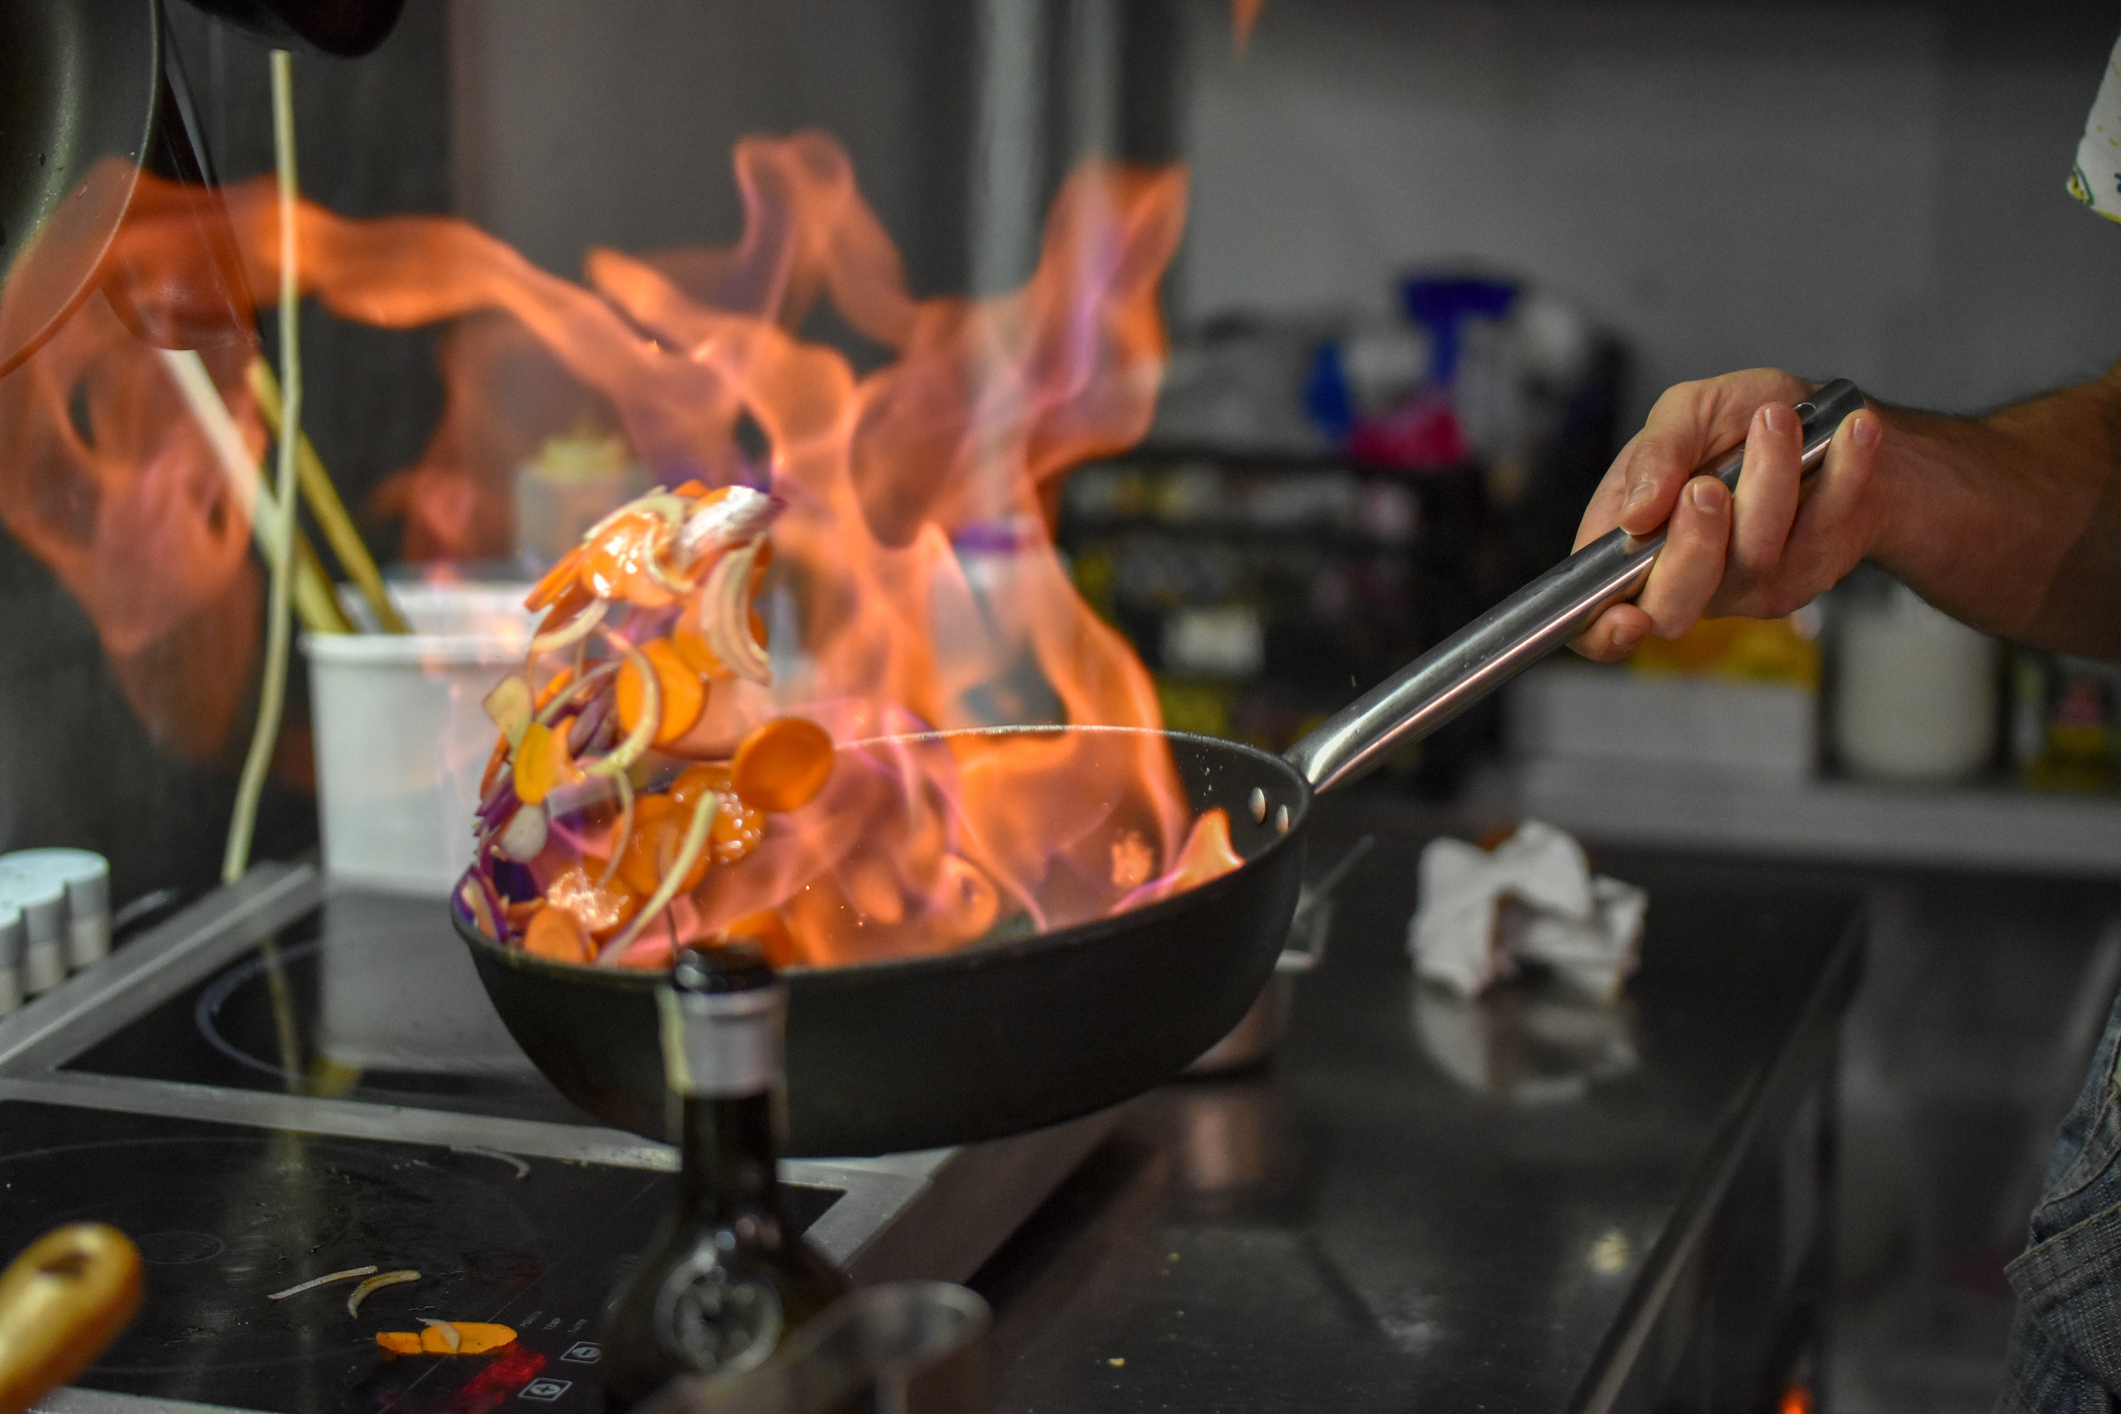 Una persona cocinando con una sartén en llamas